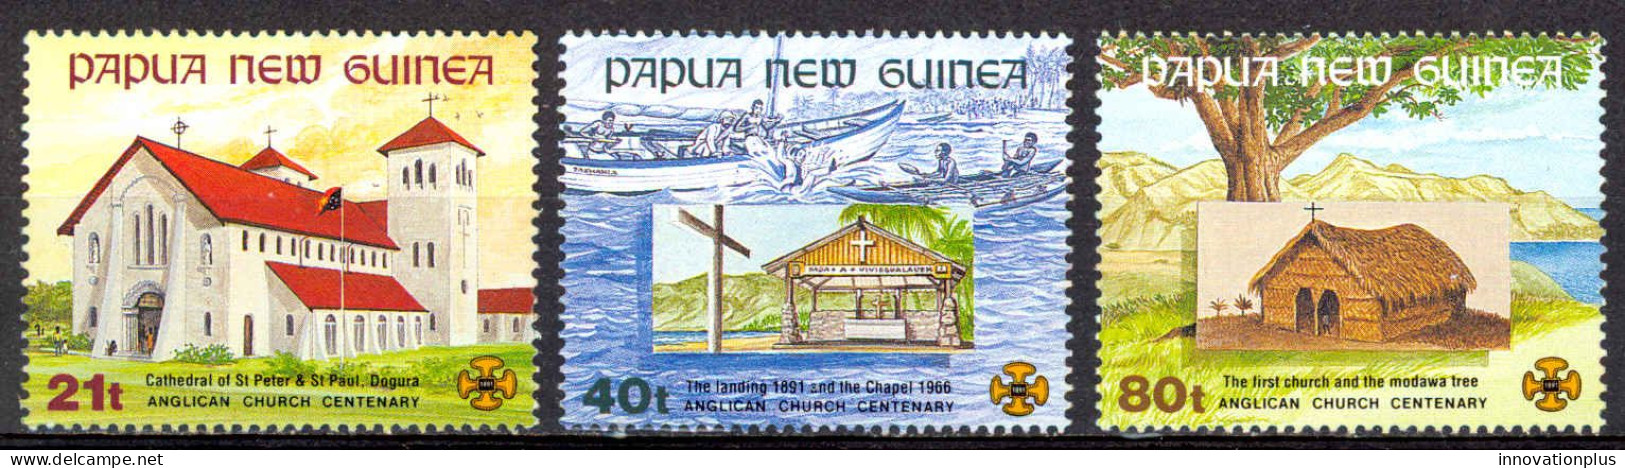 Papua New Guinea Sc# 775-777 MNH 1991 Churches - Papouasie-Nouvelle-Guinée